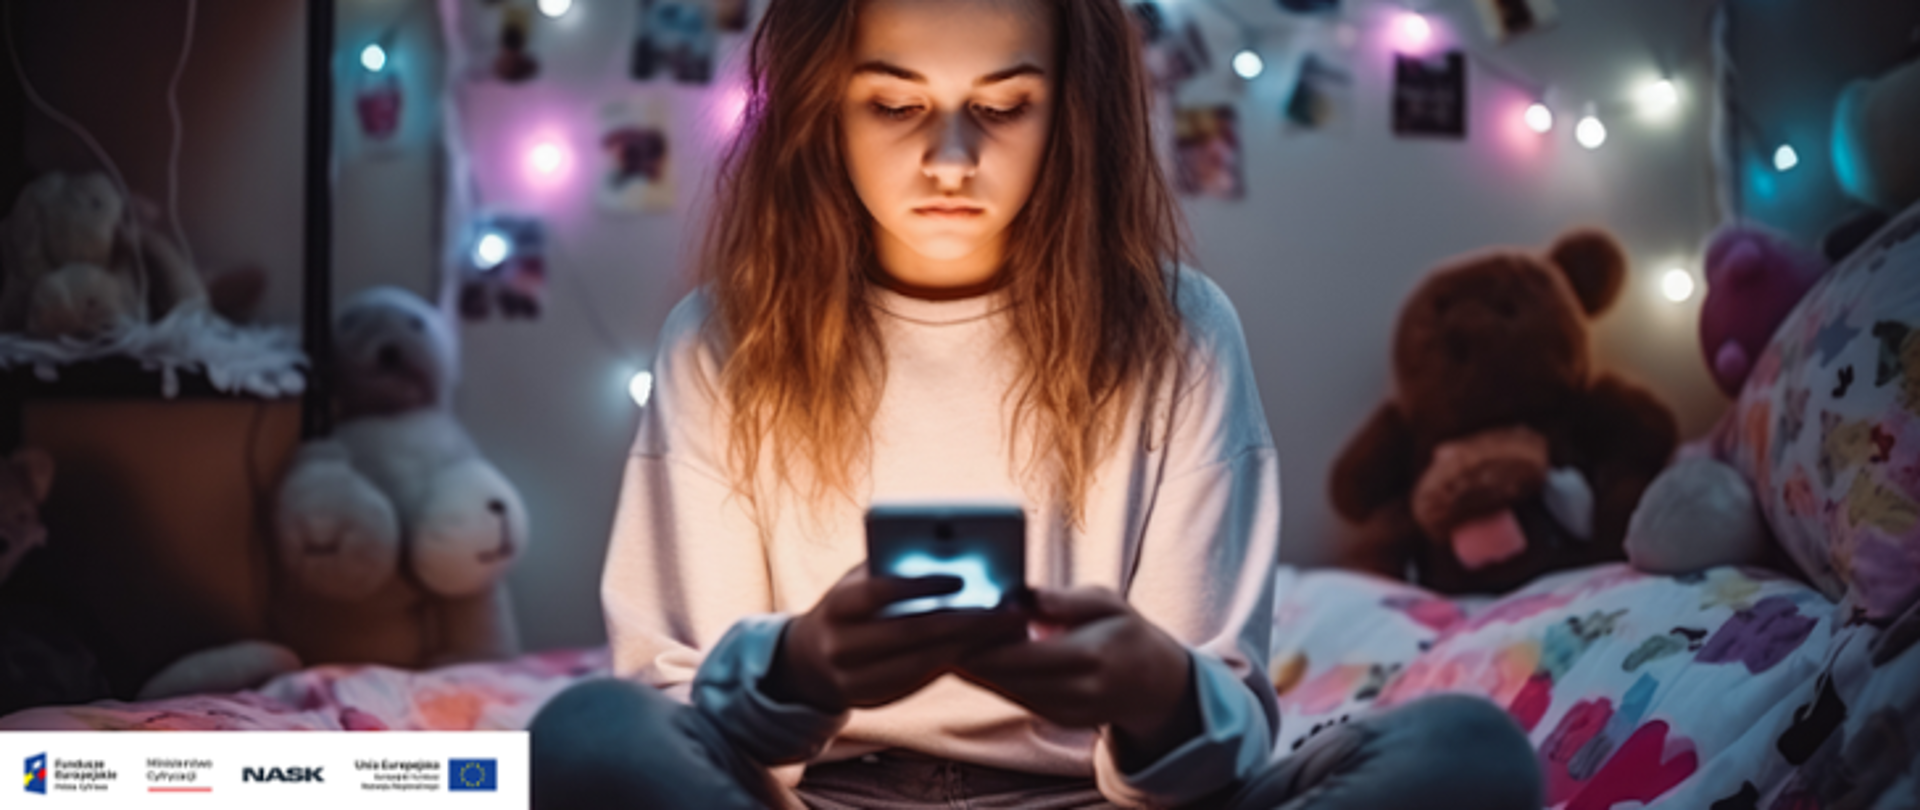 Na zdjęciu widzimy nastolatkę trzymająca w ręku telefon komórkowy. Dziewczyna siedzi na łóżku, wpatrzona w telefon.